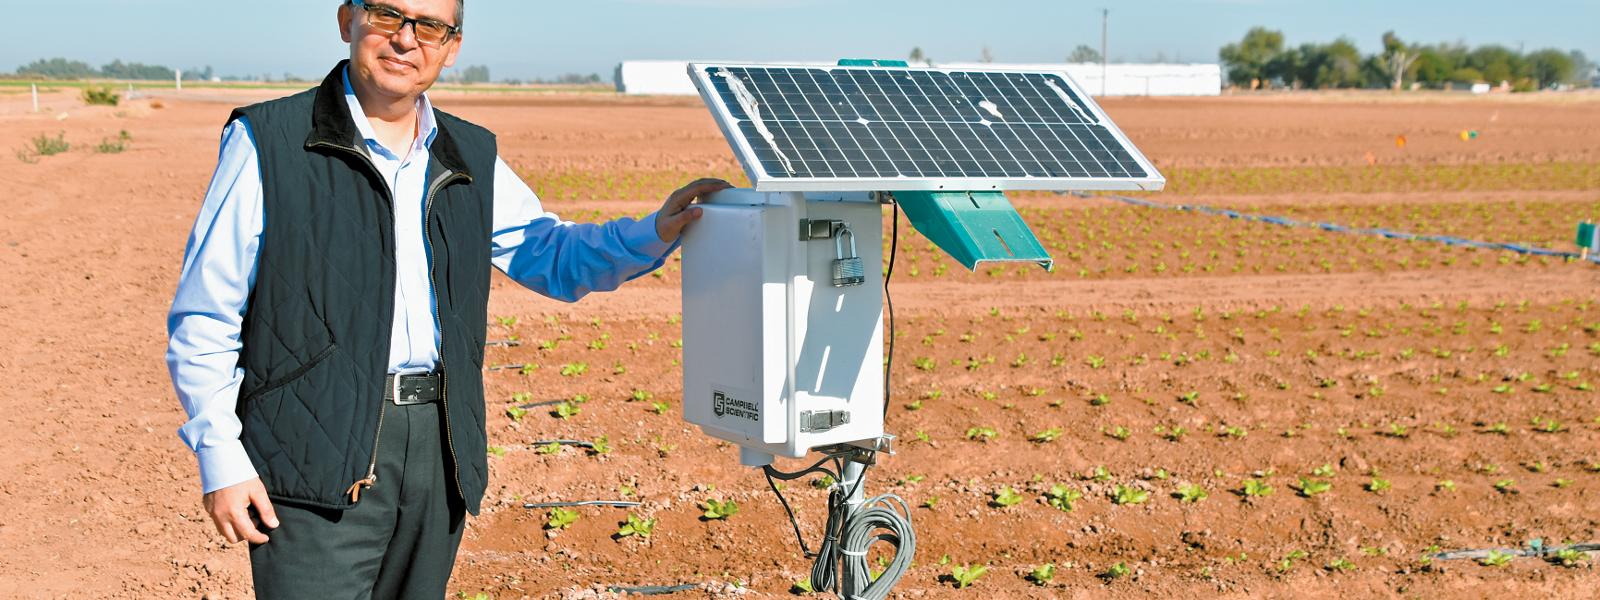 Soil sensors, drip reduce water use in desert lettuce